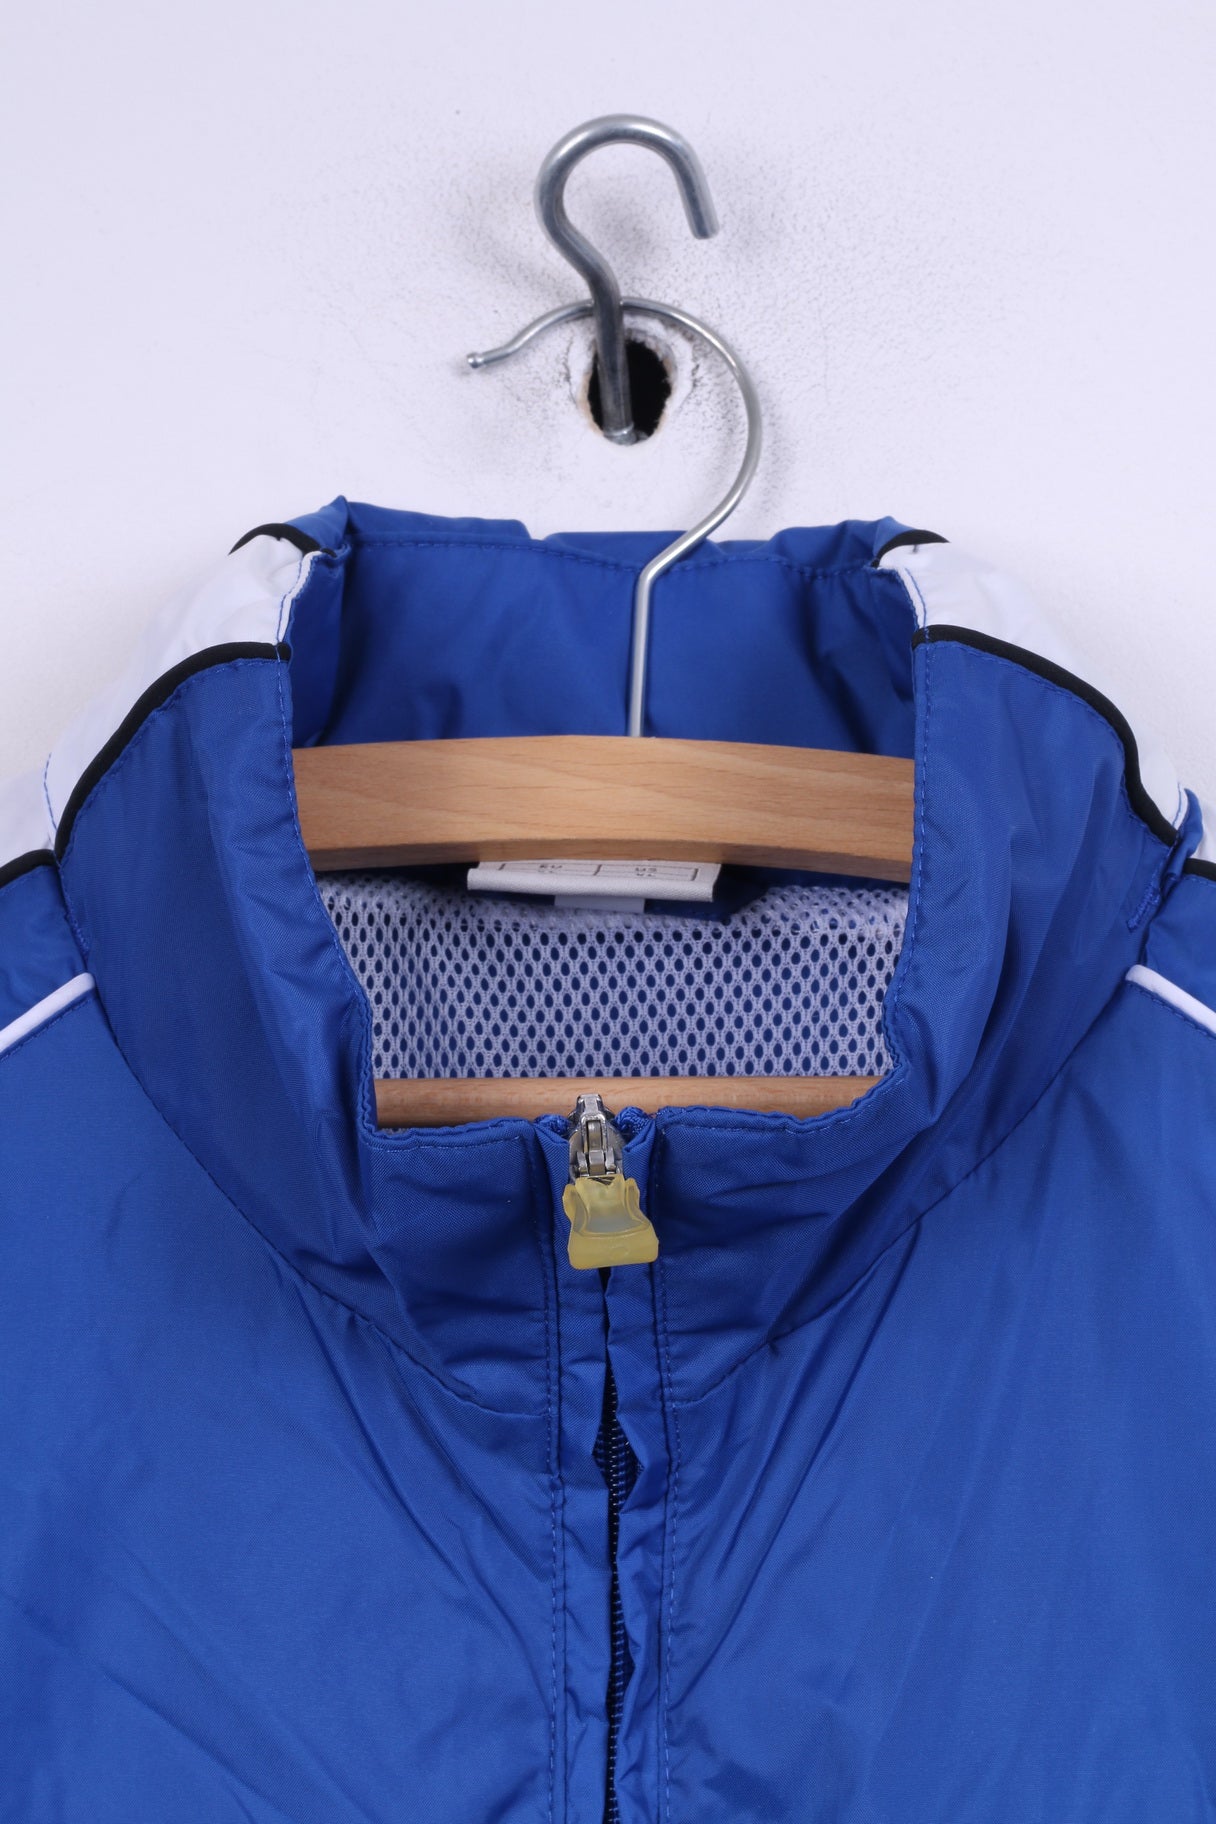 Jako Mens XL Lightweight Jacket Blue Hidden Hood Sportswear Top Nylon Waterproof KG Blau-Weiss 1947 KF